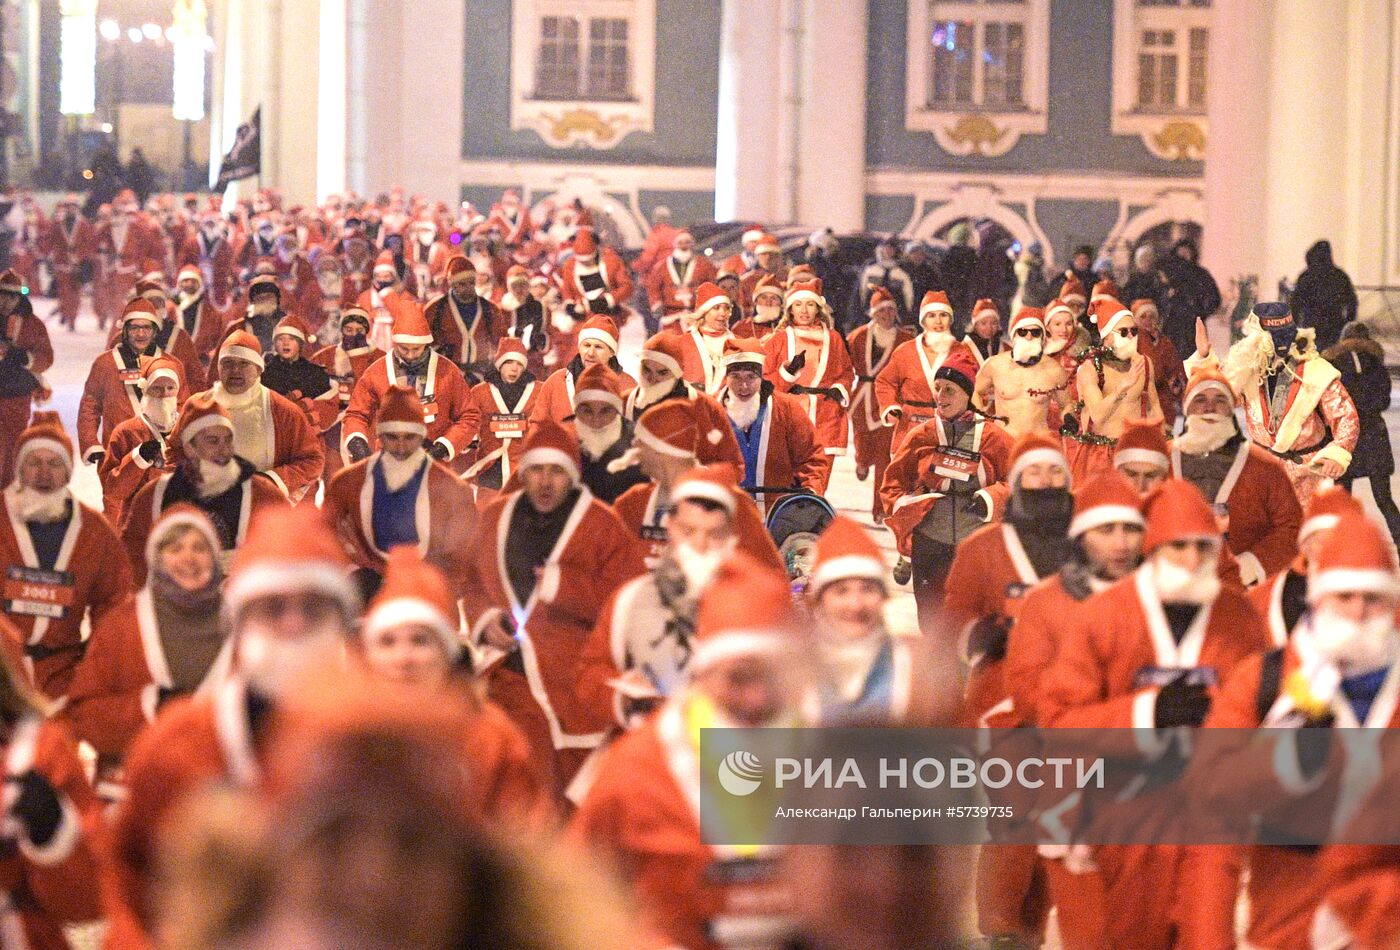 Забег Дедов Морозов в Санкт-Петербурге 